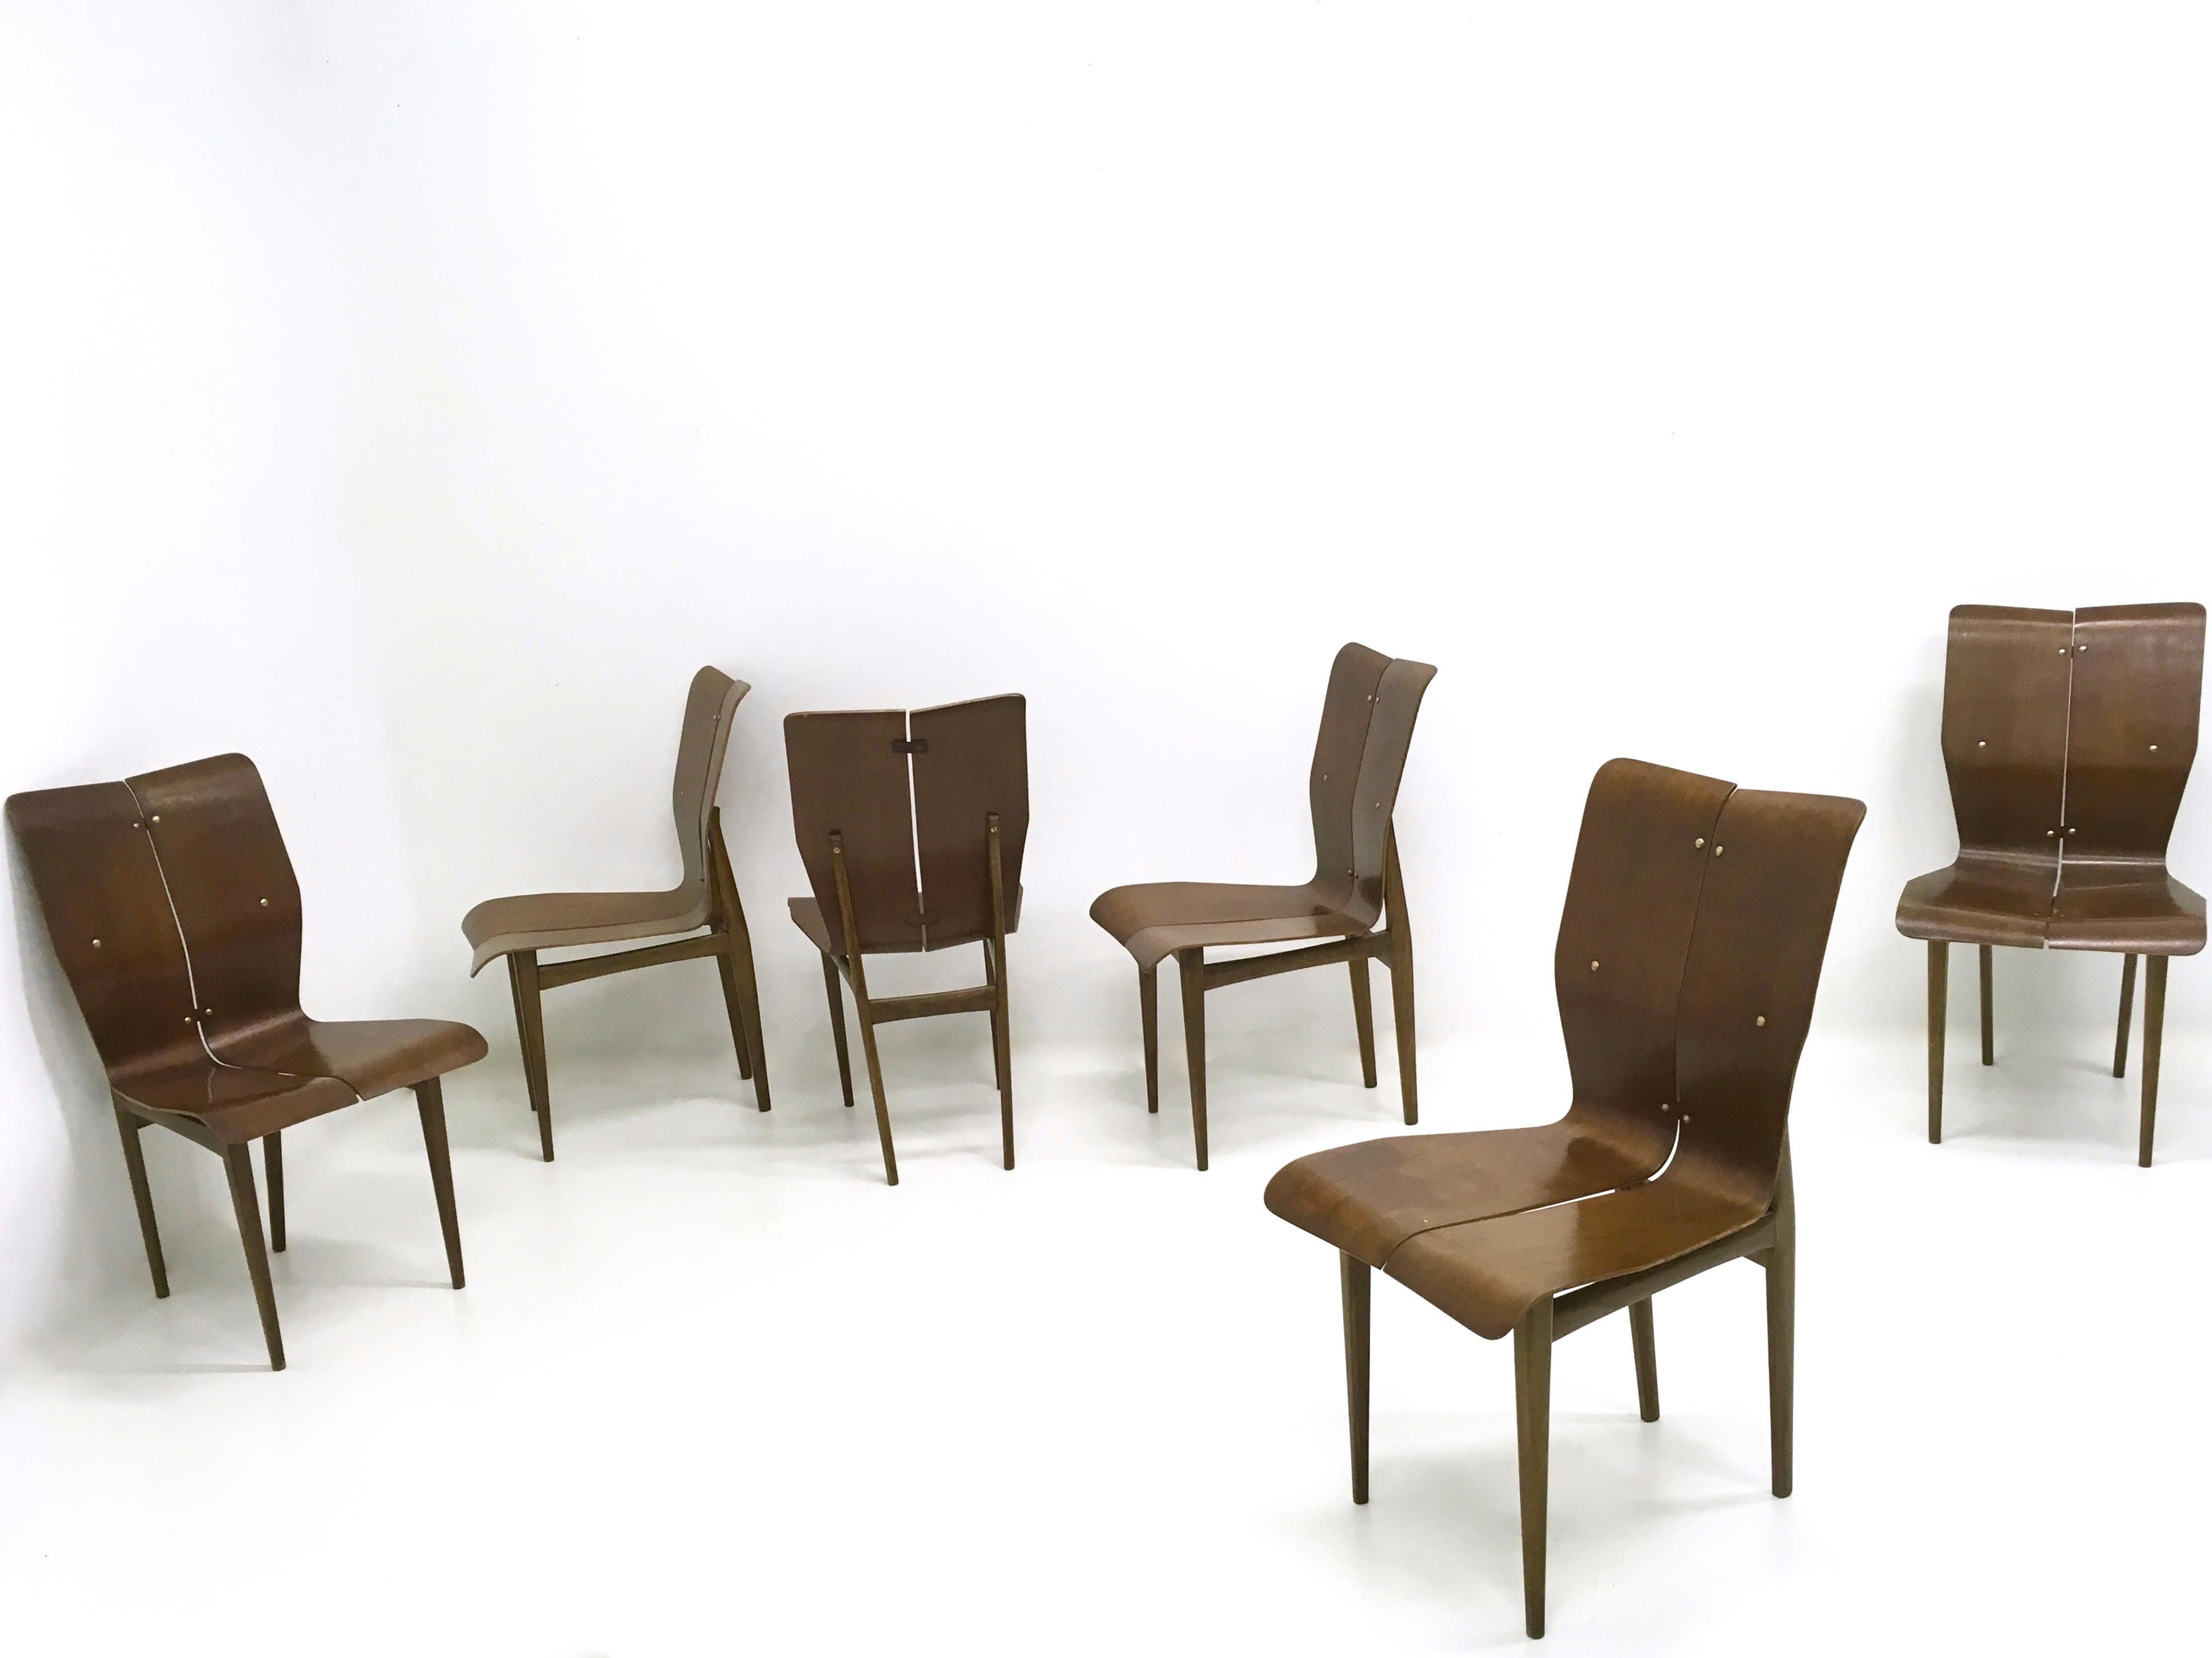 Hergestellt in Finnland, 1950er Jahre.
Sie verfügen über einen geschwungenen Holzsitz und geschwungene Beine sowie Messingdetails, 
Diese Stühle sind Vintage, daher können sie leichte Gebrauchsspuren aufweisen, aber sie sind in einem ausgezeichneten